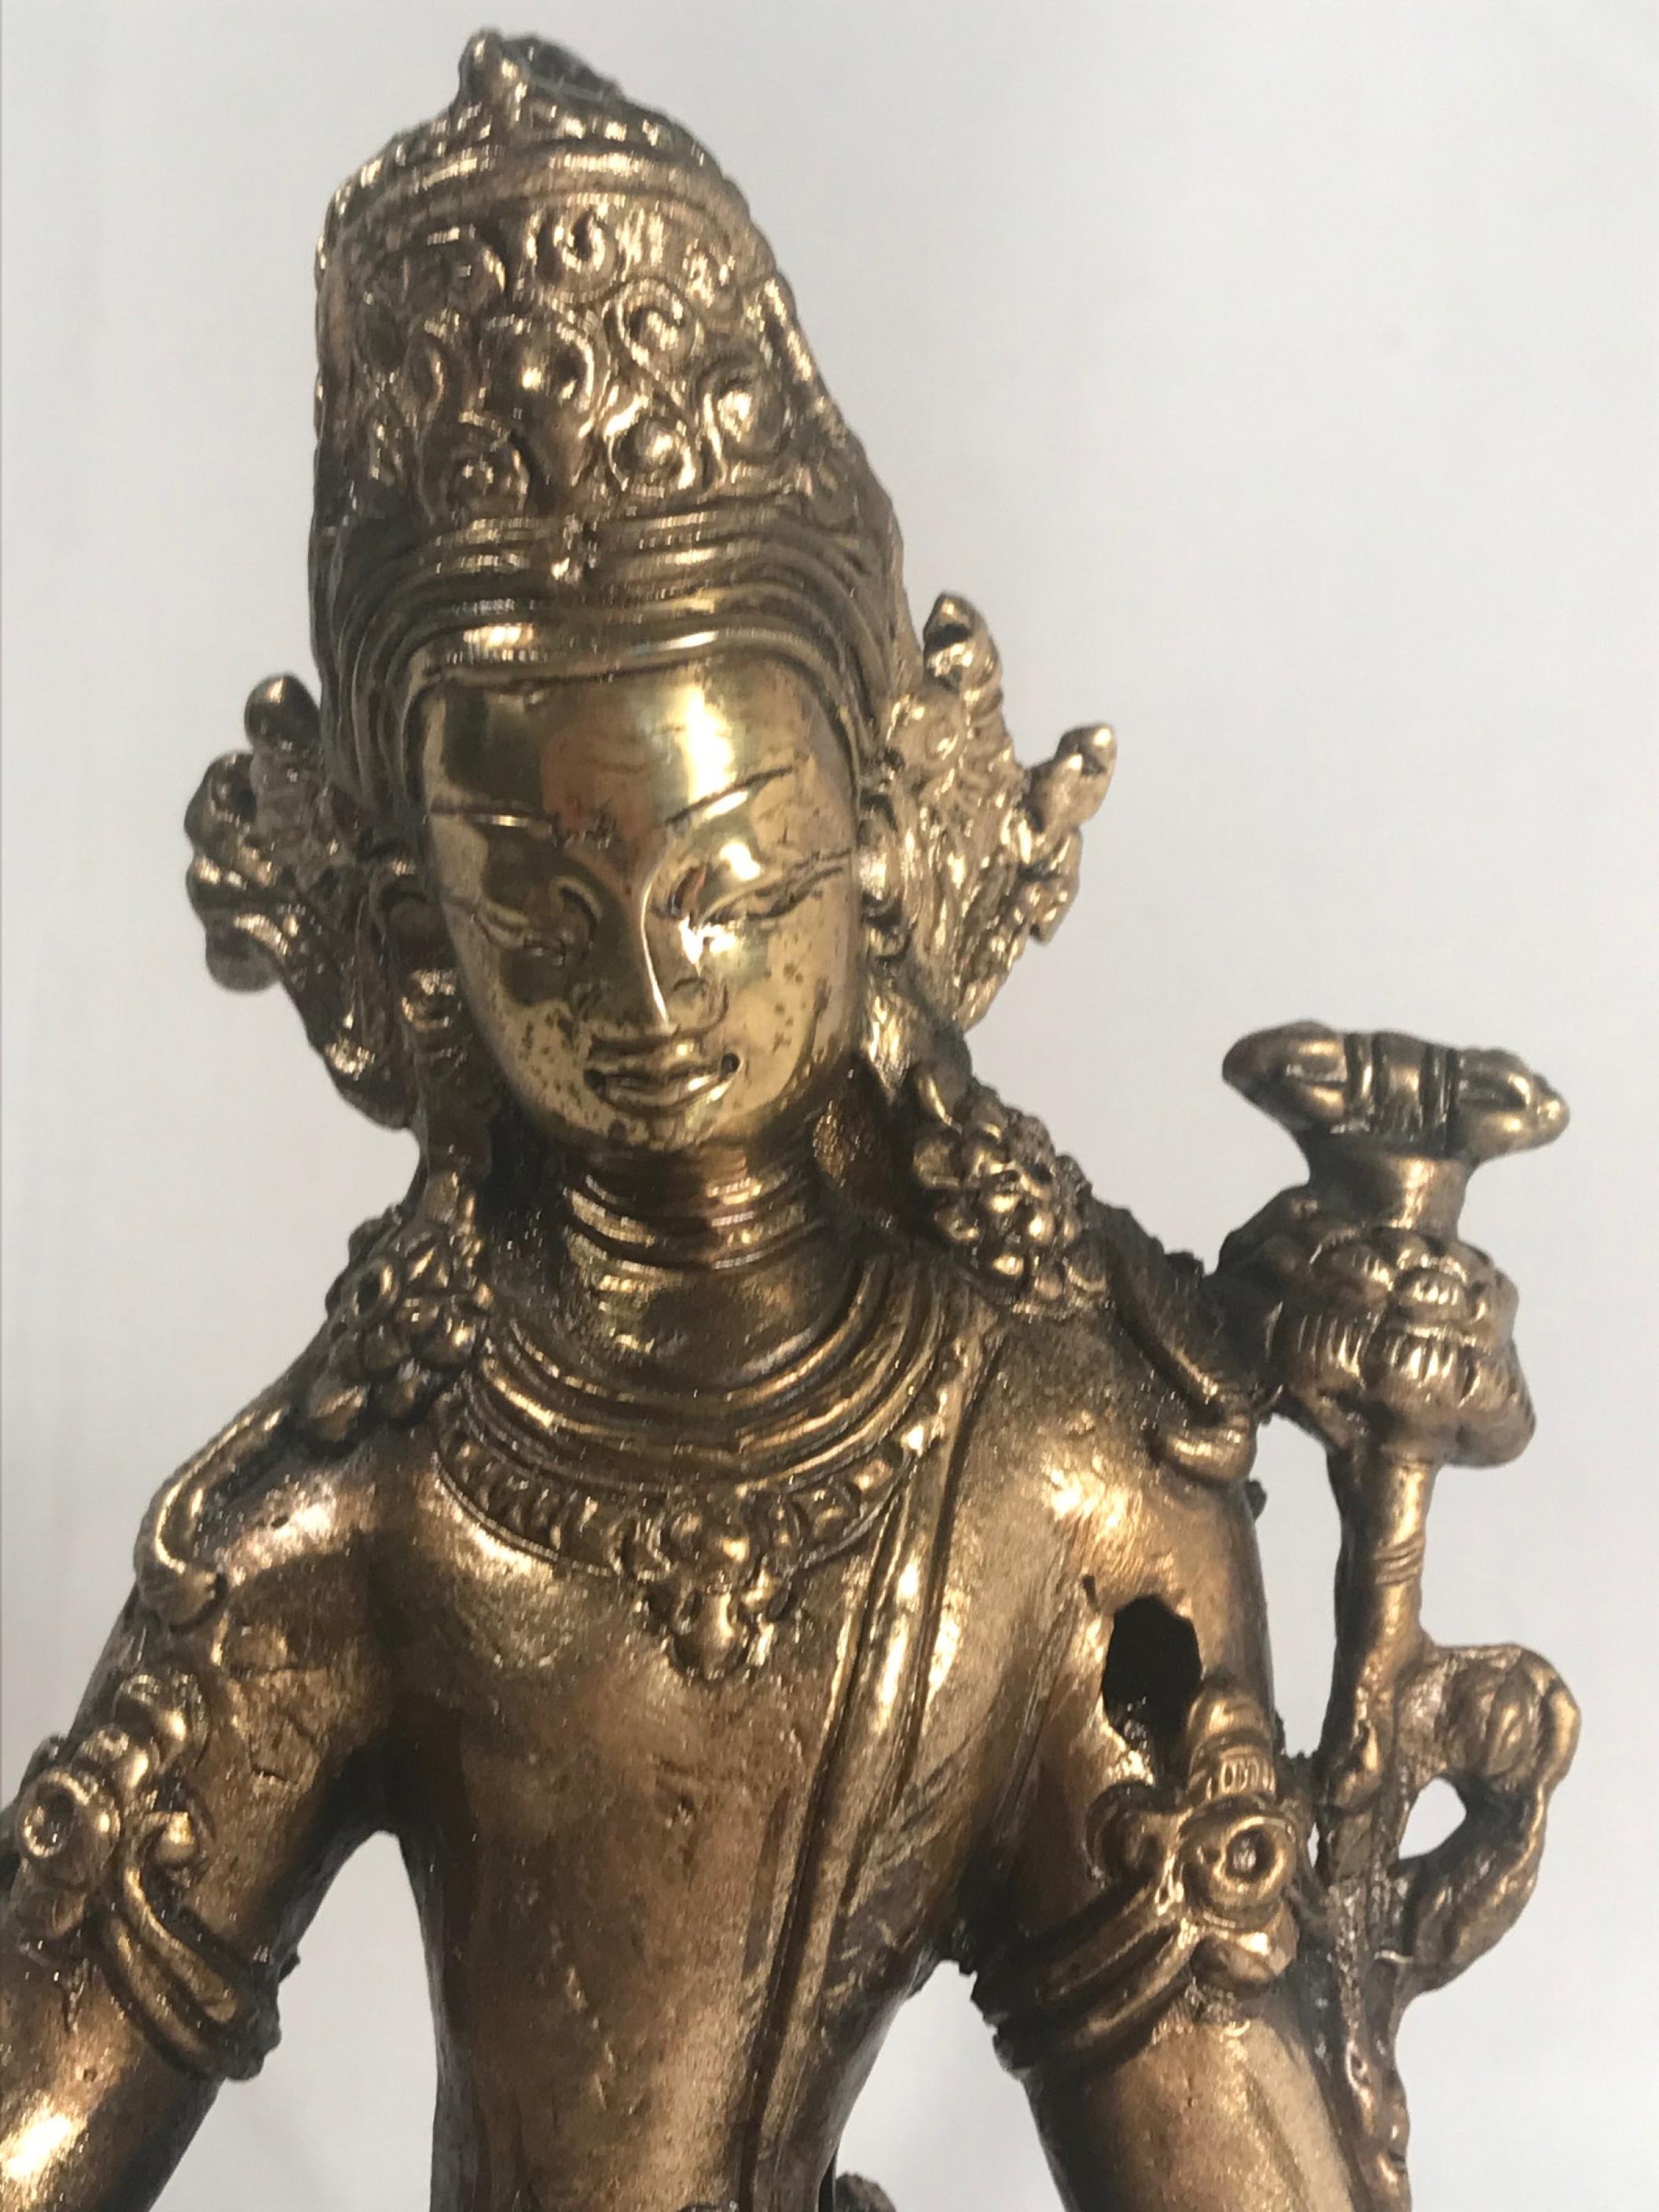 Bouddha en bronze doré du 19e siècle

Statue de Bouddha en bronze finement coulé et doré, avec des motifs floraux modelés et incisés. Ce Jewell, dieu de la richesse orné de bijoux, est assis en posture lalitasana sur un lotus, le pied droit appuyé